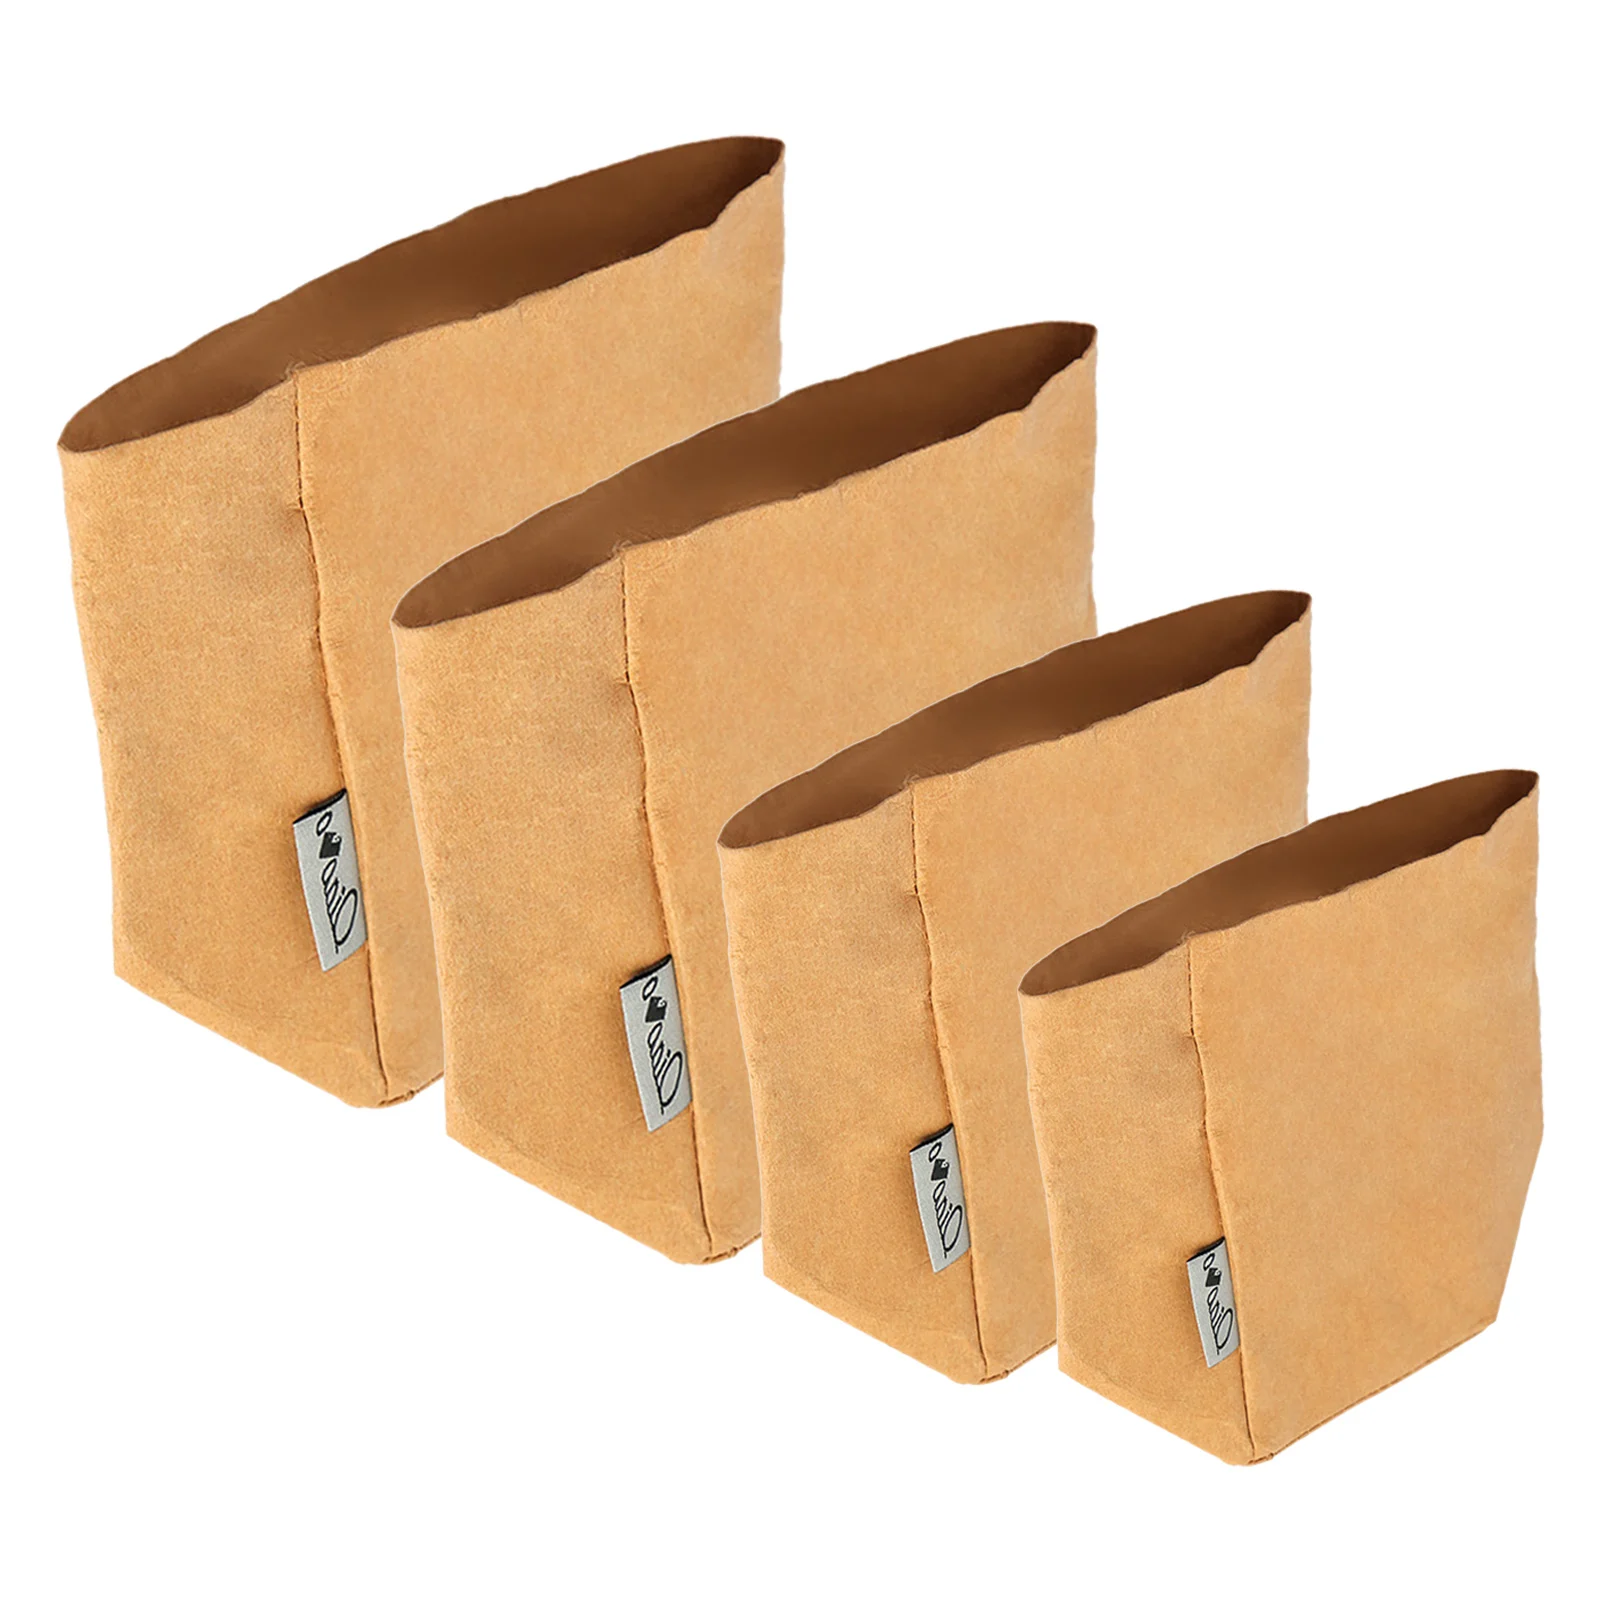 

Пакеты из крафт-бумаги многофункциональные Многоразовые моющиеся, 4 размера